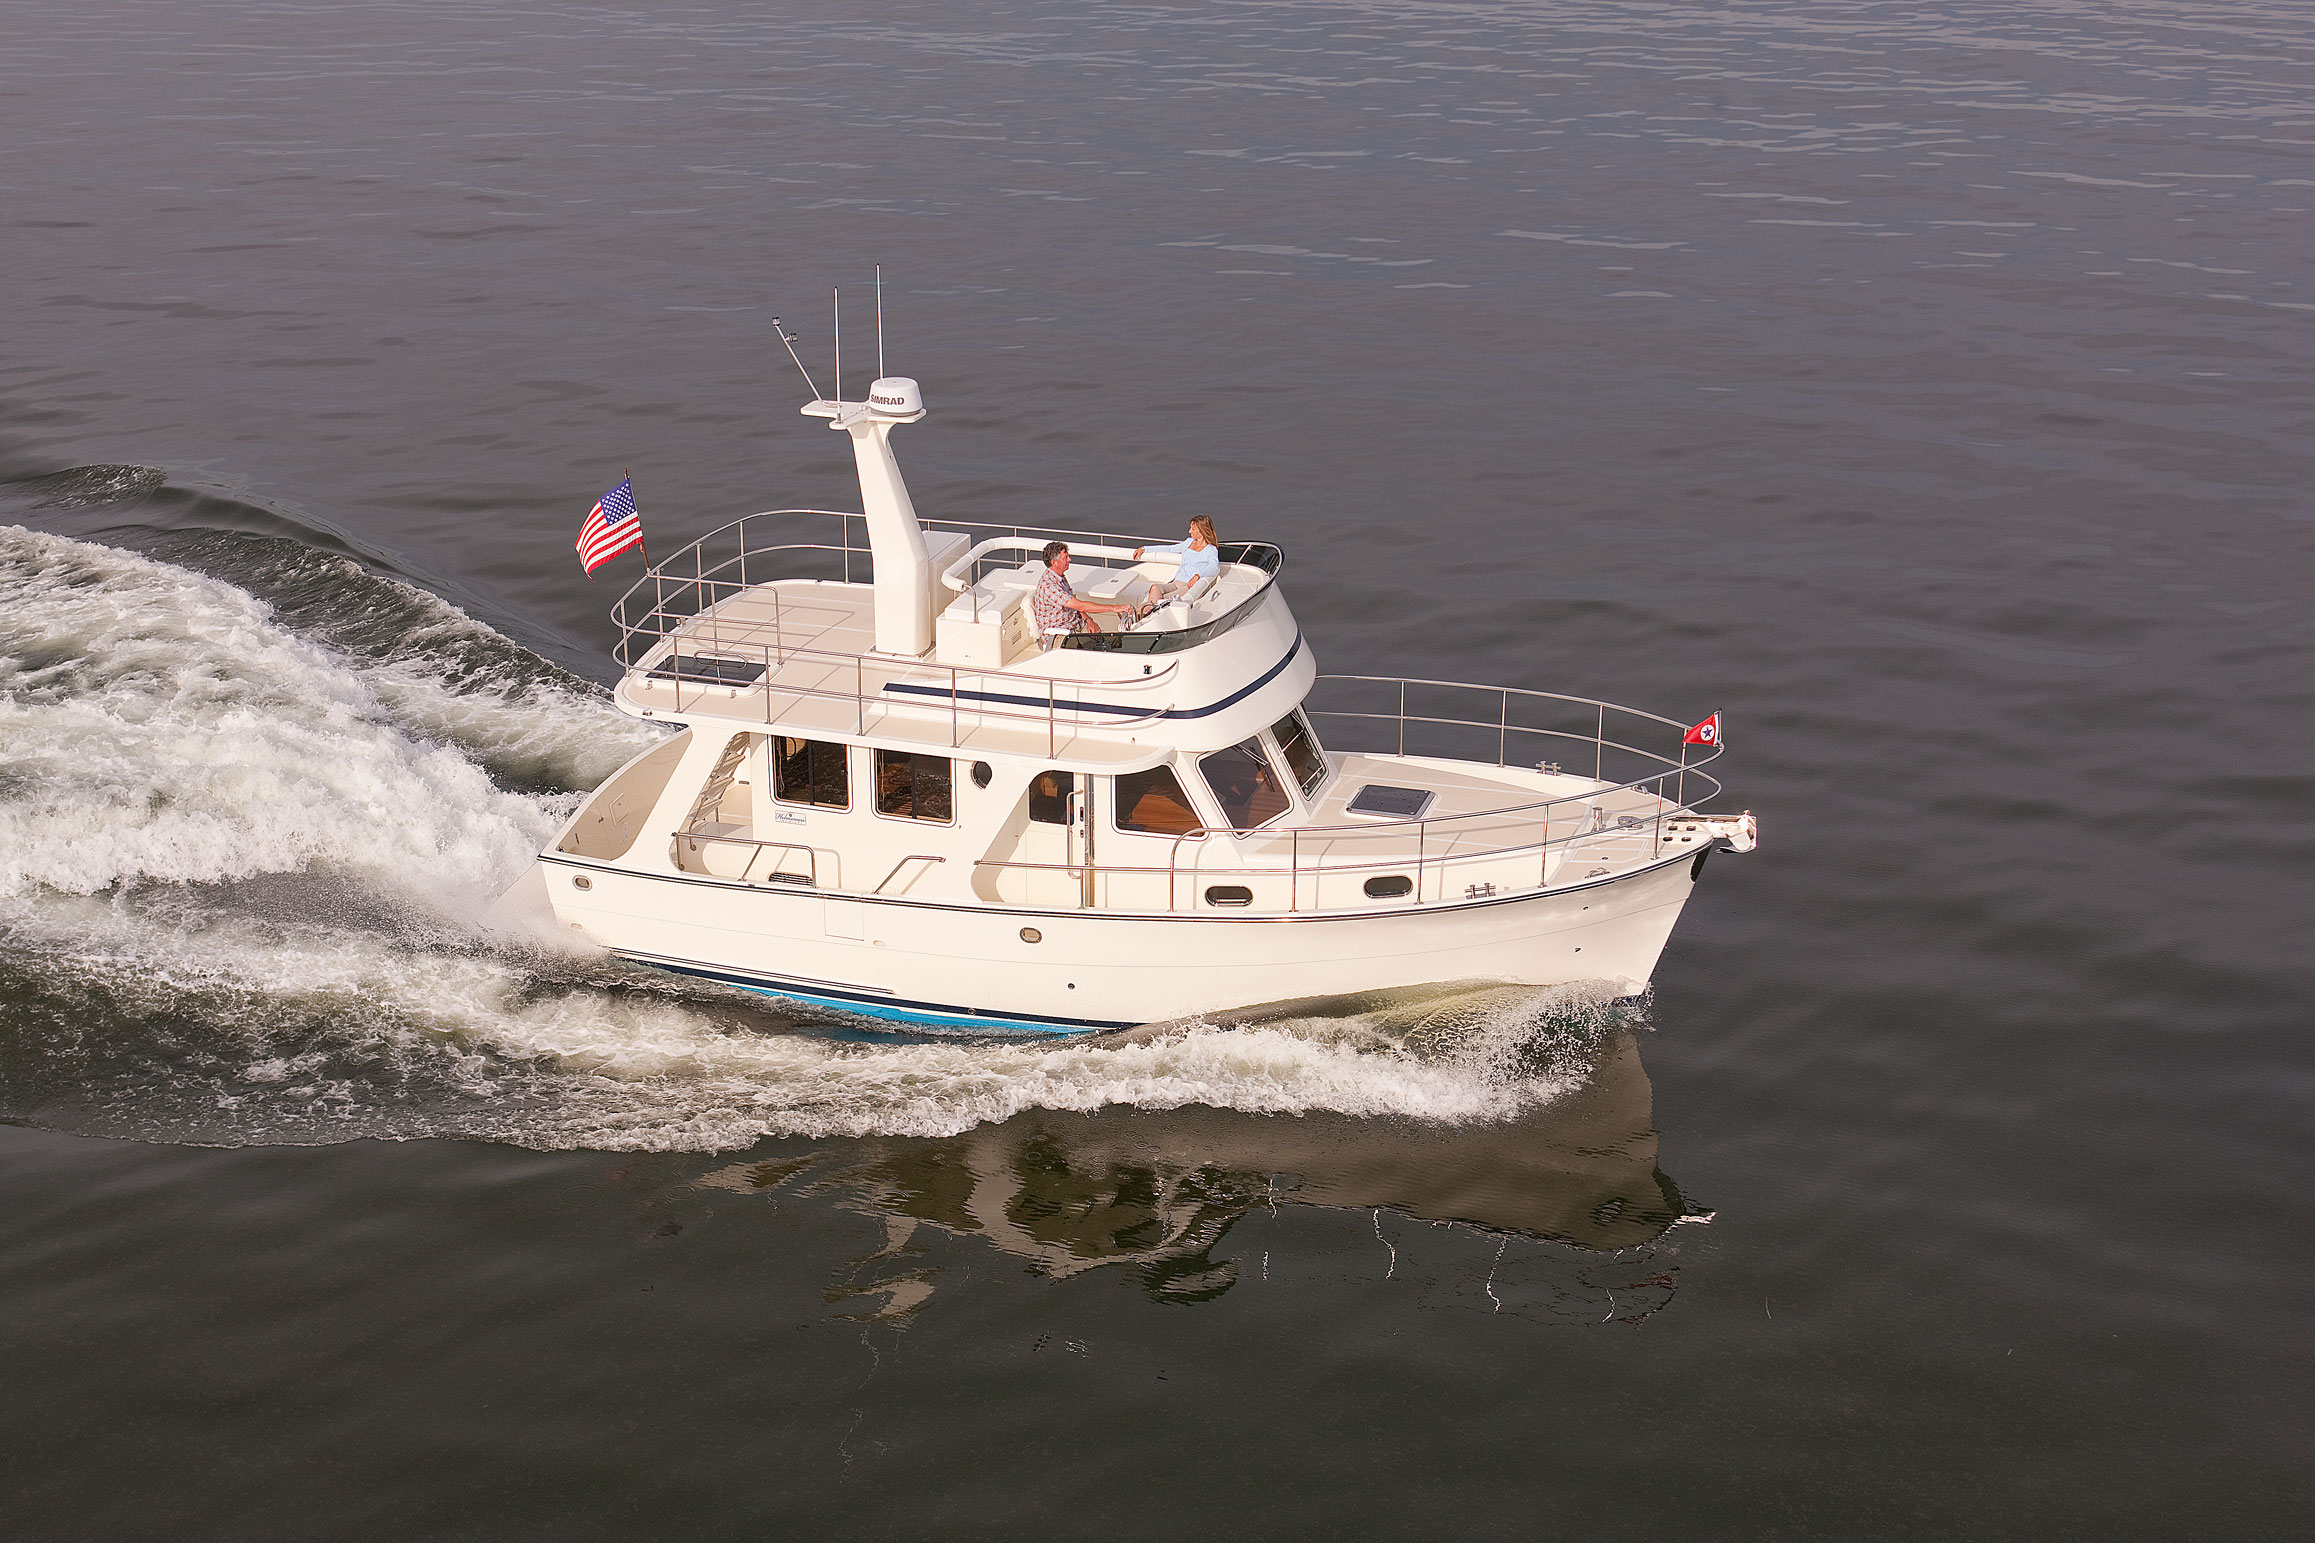 Helmsman Trawlers 37 Sedan Yacht Underway on Calm Water